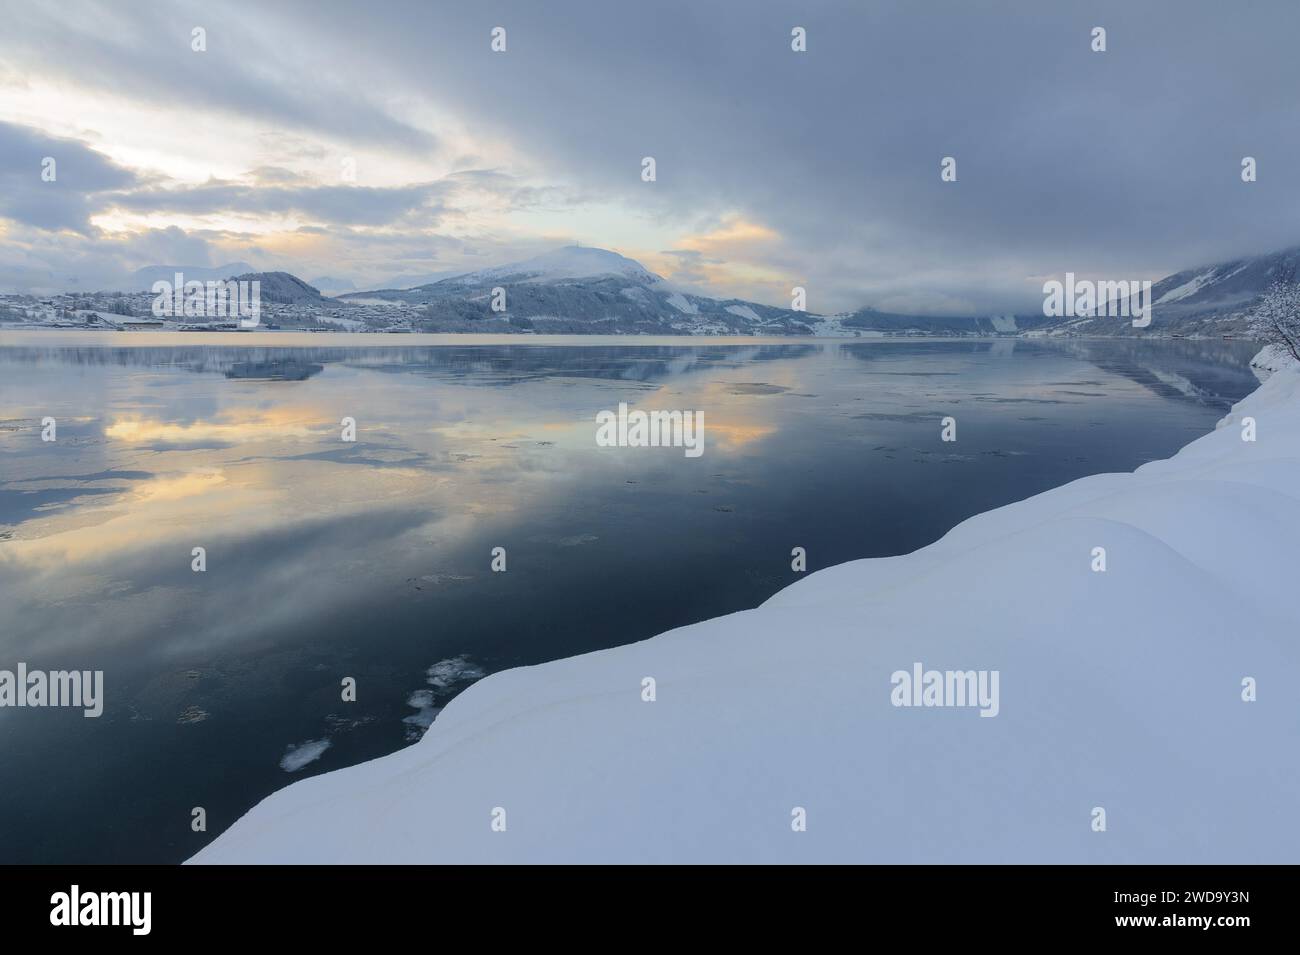 L'image capture une scène hivernale sereine avec un fjord lisse, semblable à un miroir, reflétant les couleurs douces du ciel du soir dans un environnement enneigé. Banque D'Images